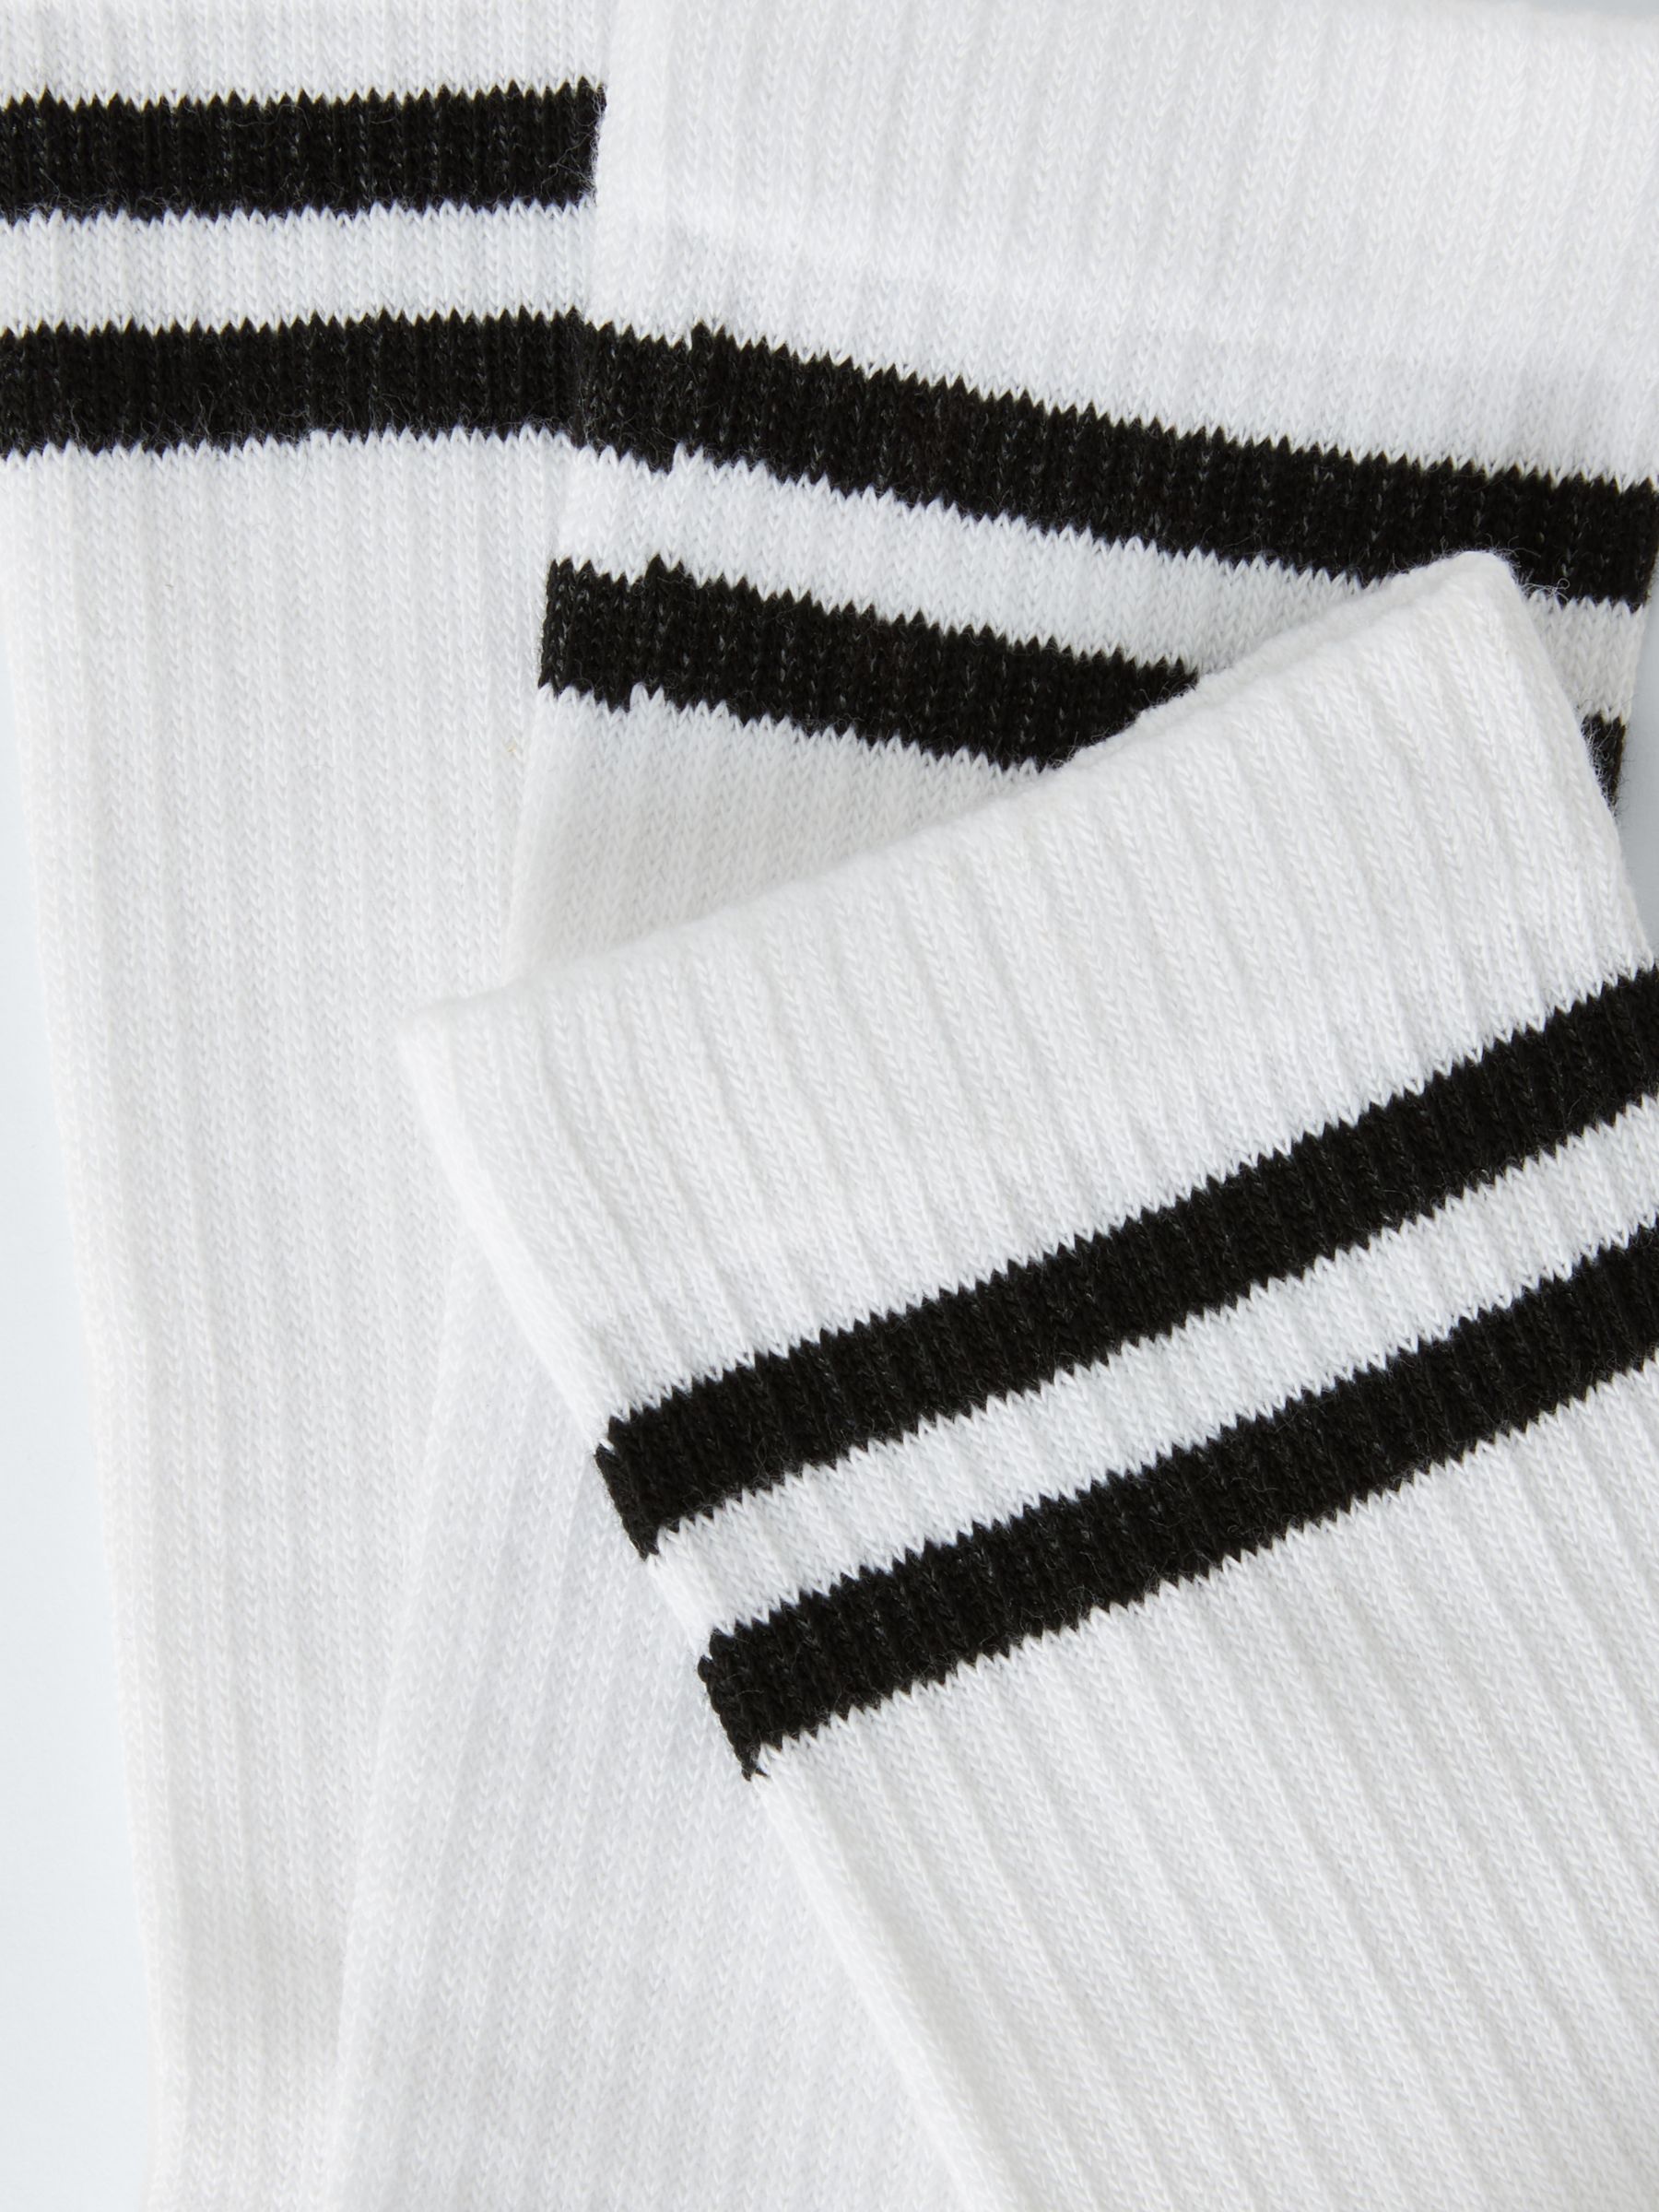 John Lewis ANYDAY Stripe Tube Socks, Pack of 5, White/Black, S